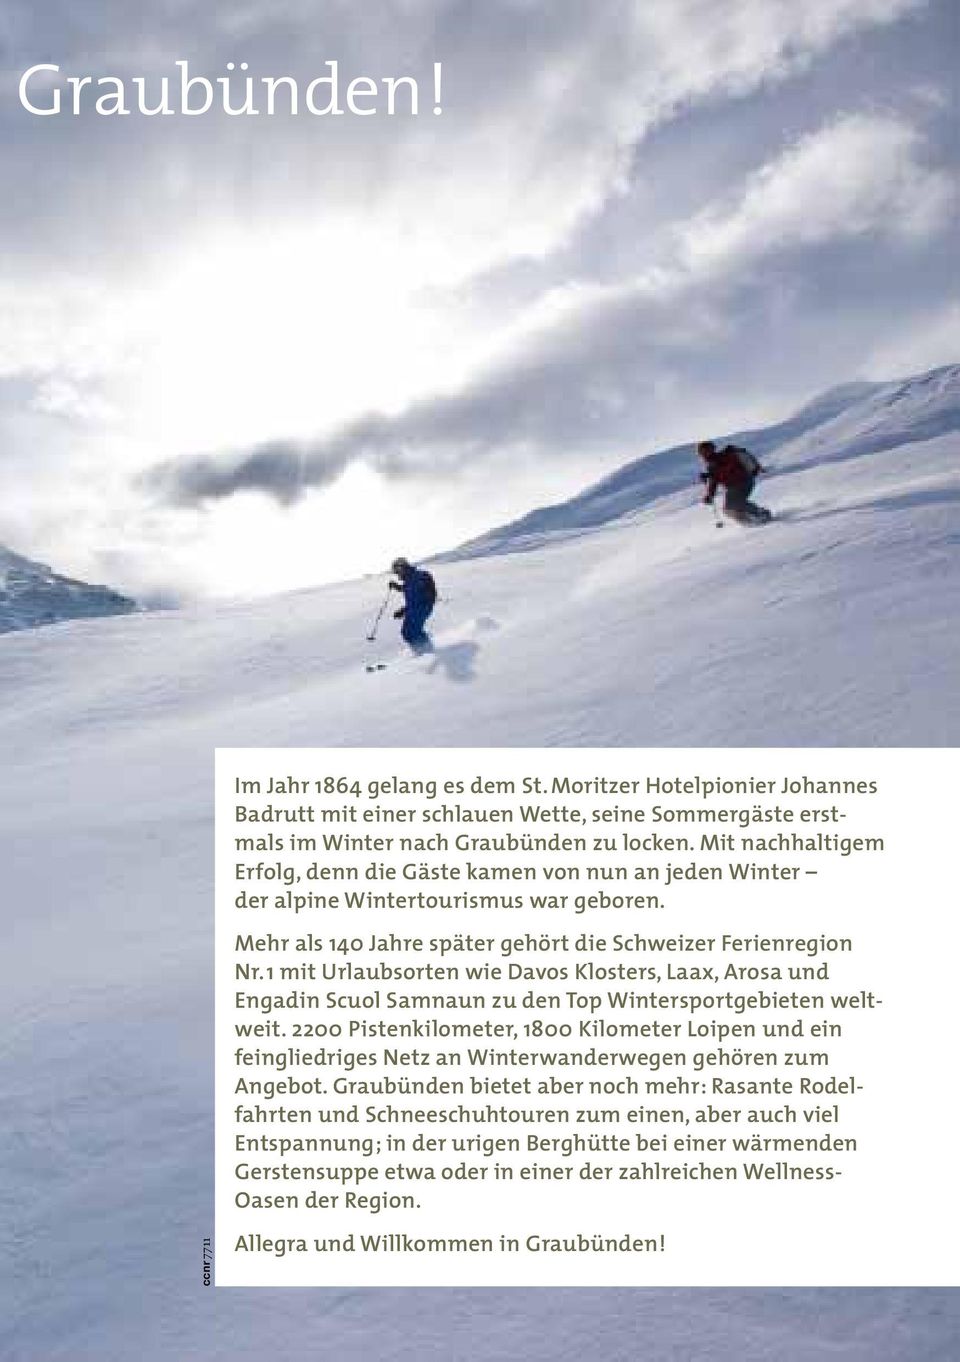 1 mit Urlaubsorten wie Davos Klosters, Laax, Arosa und Engadin Scuol Samnaun zu den Top Wintersportgebieten weltweit.